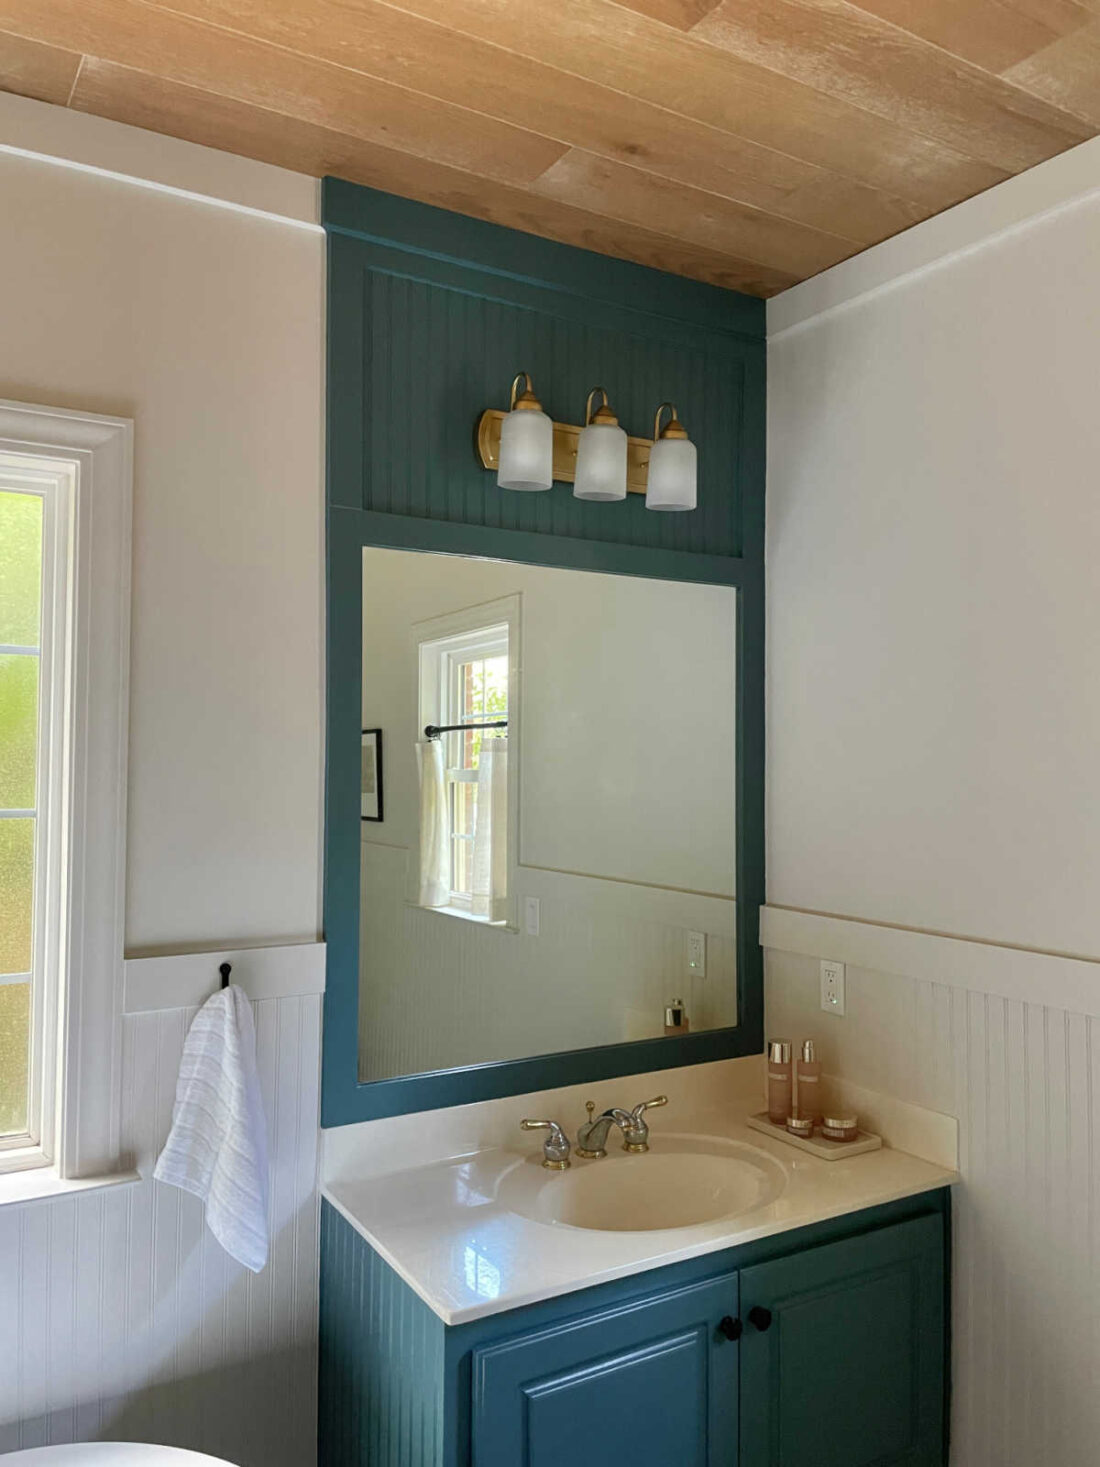 painted bathroom vanity and framed mirror